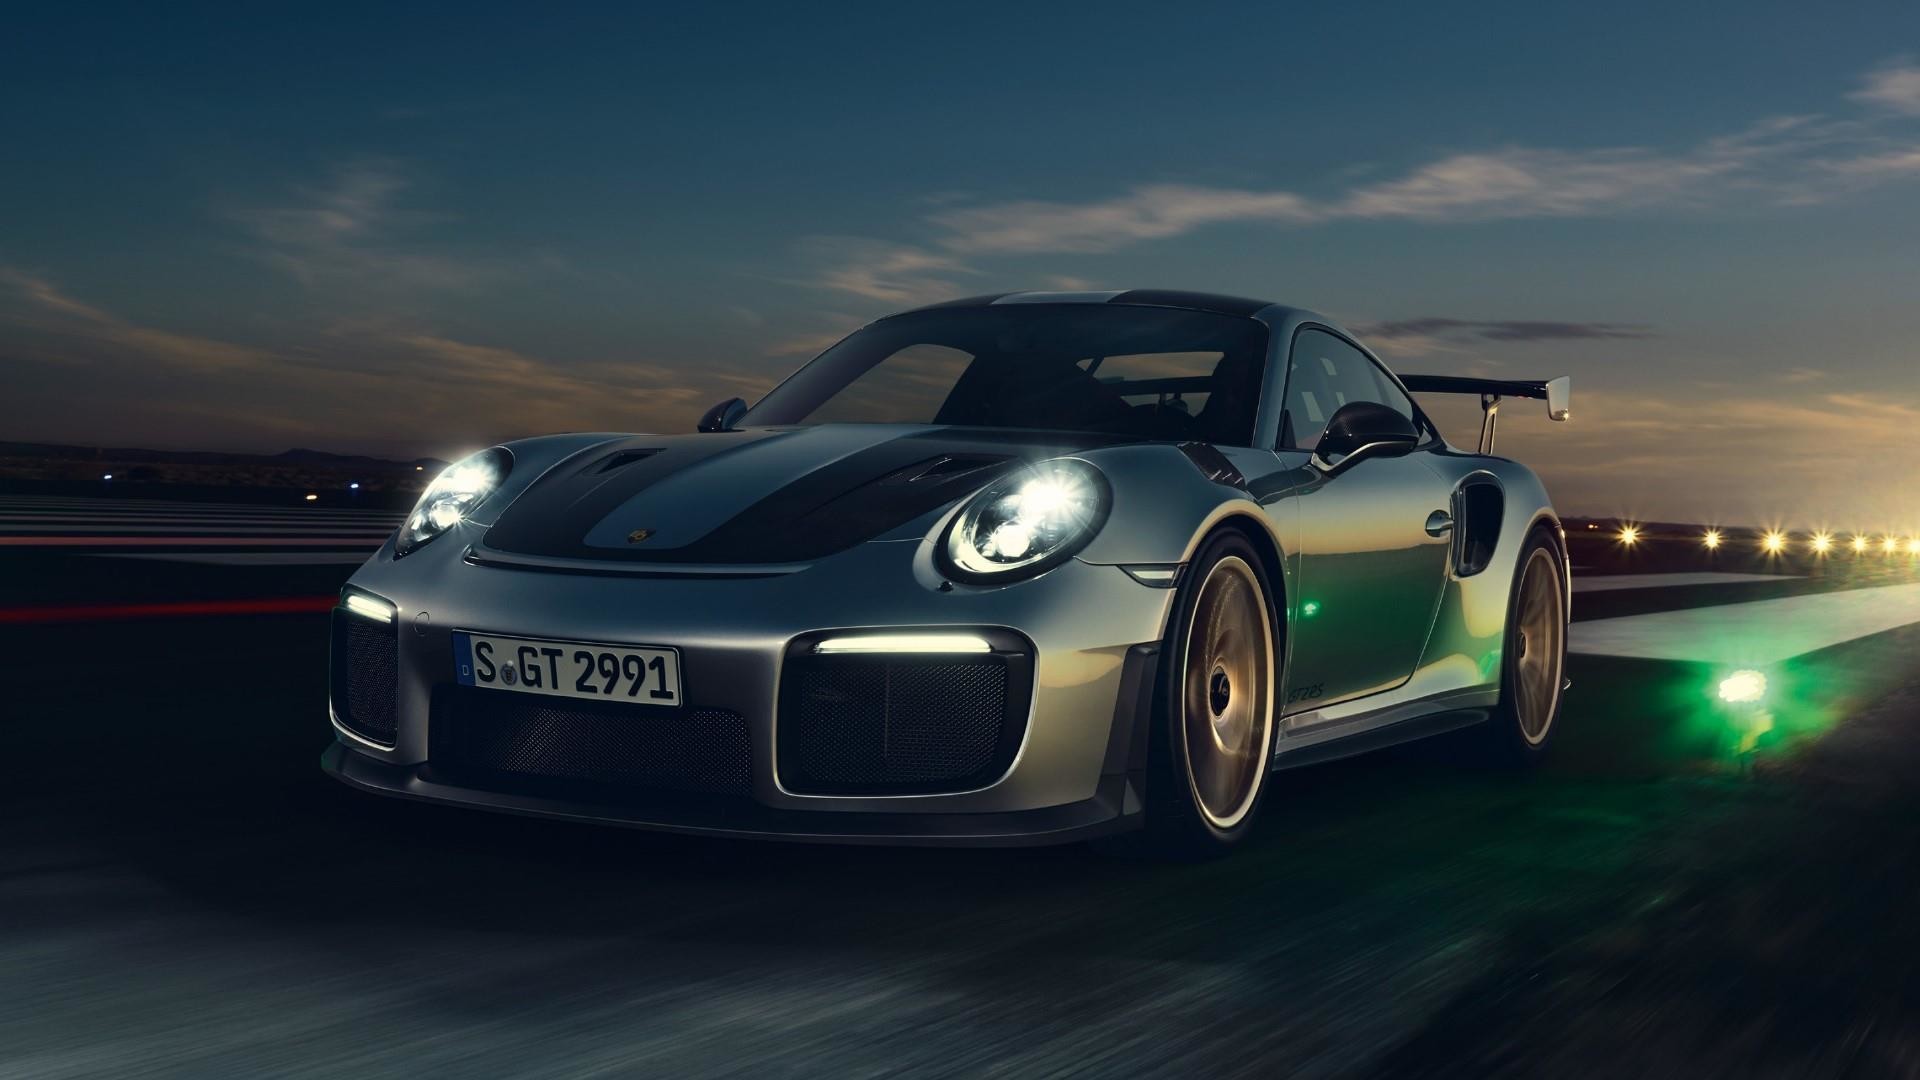 Porsche 911 Gt2 , HD Wallpaper & Backgrounds